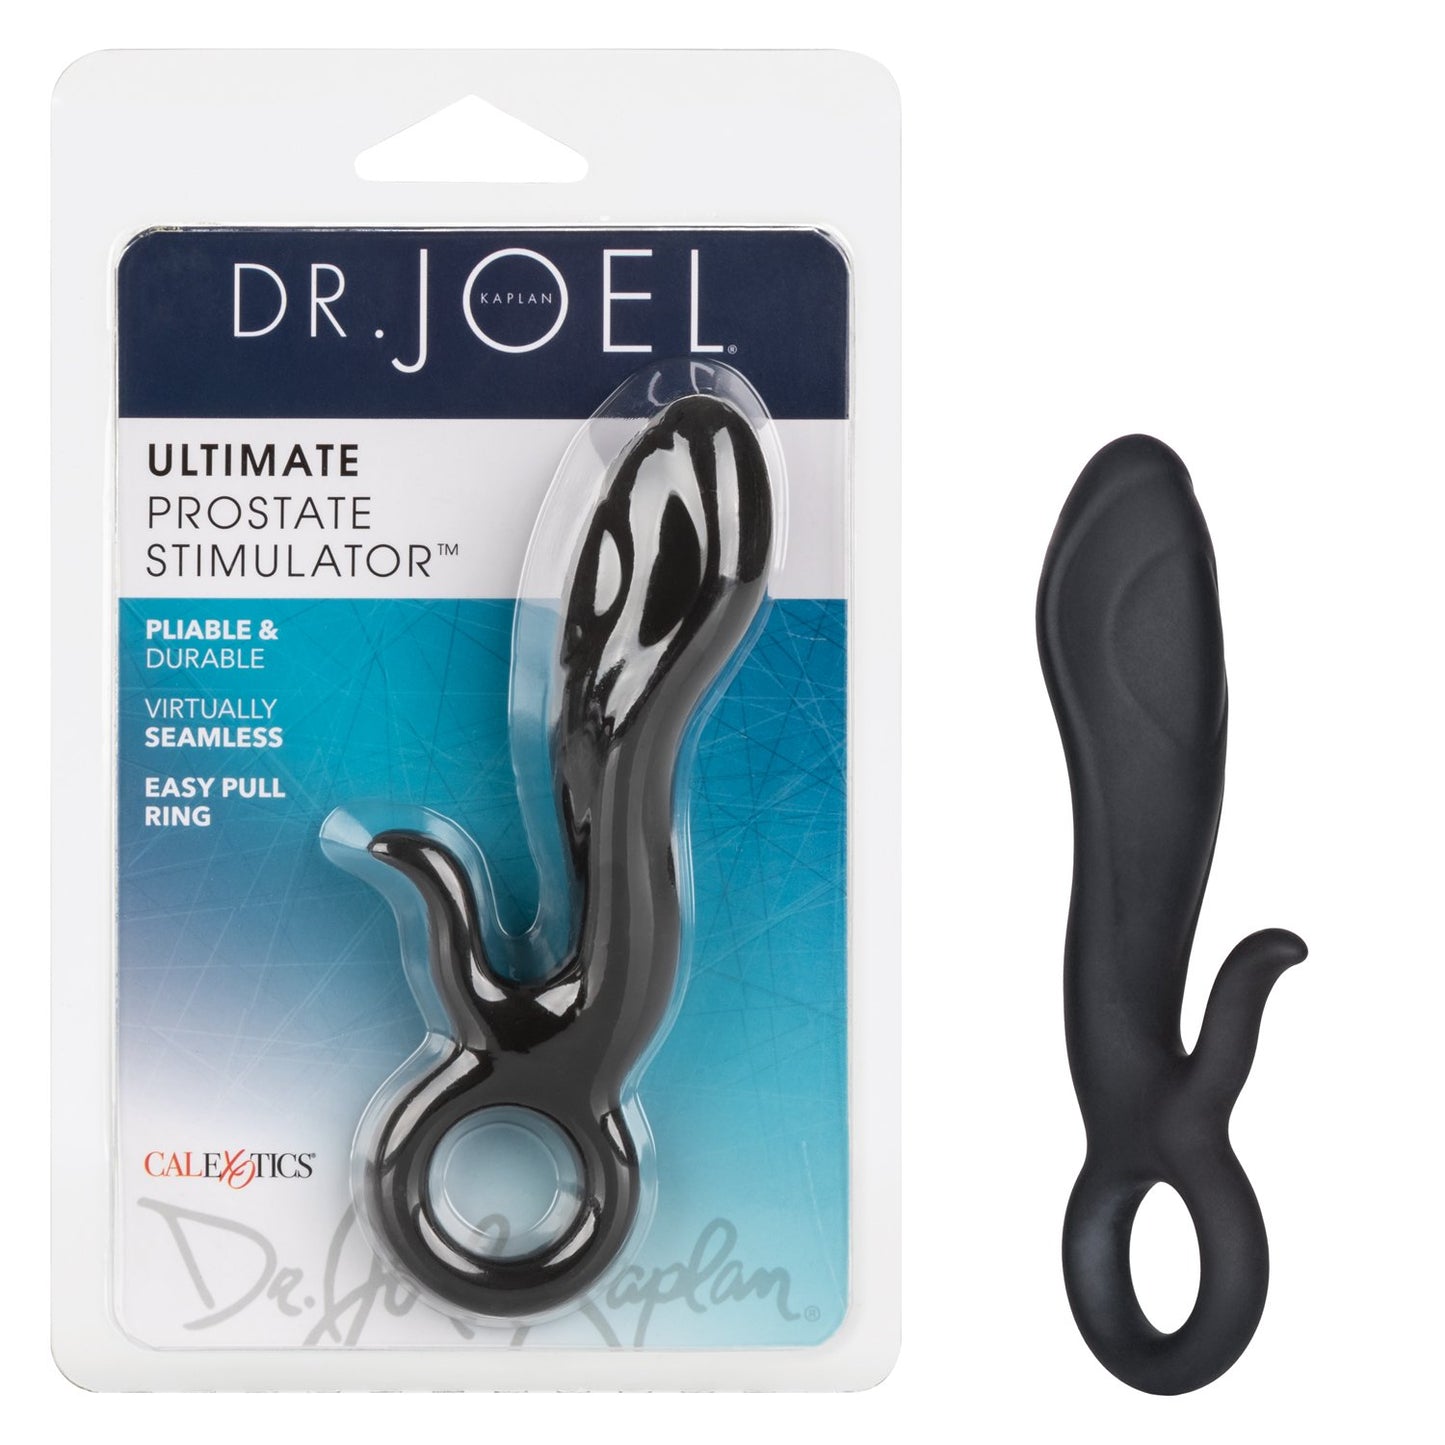 Dr. Joel Kaplan Ultimate Prostate Stimulator